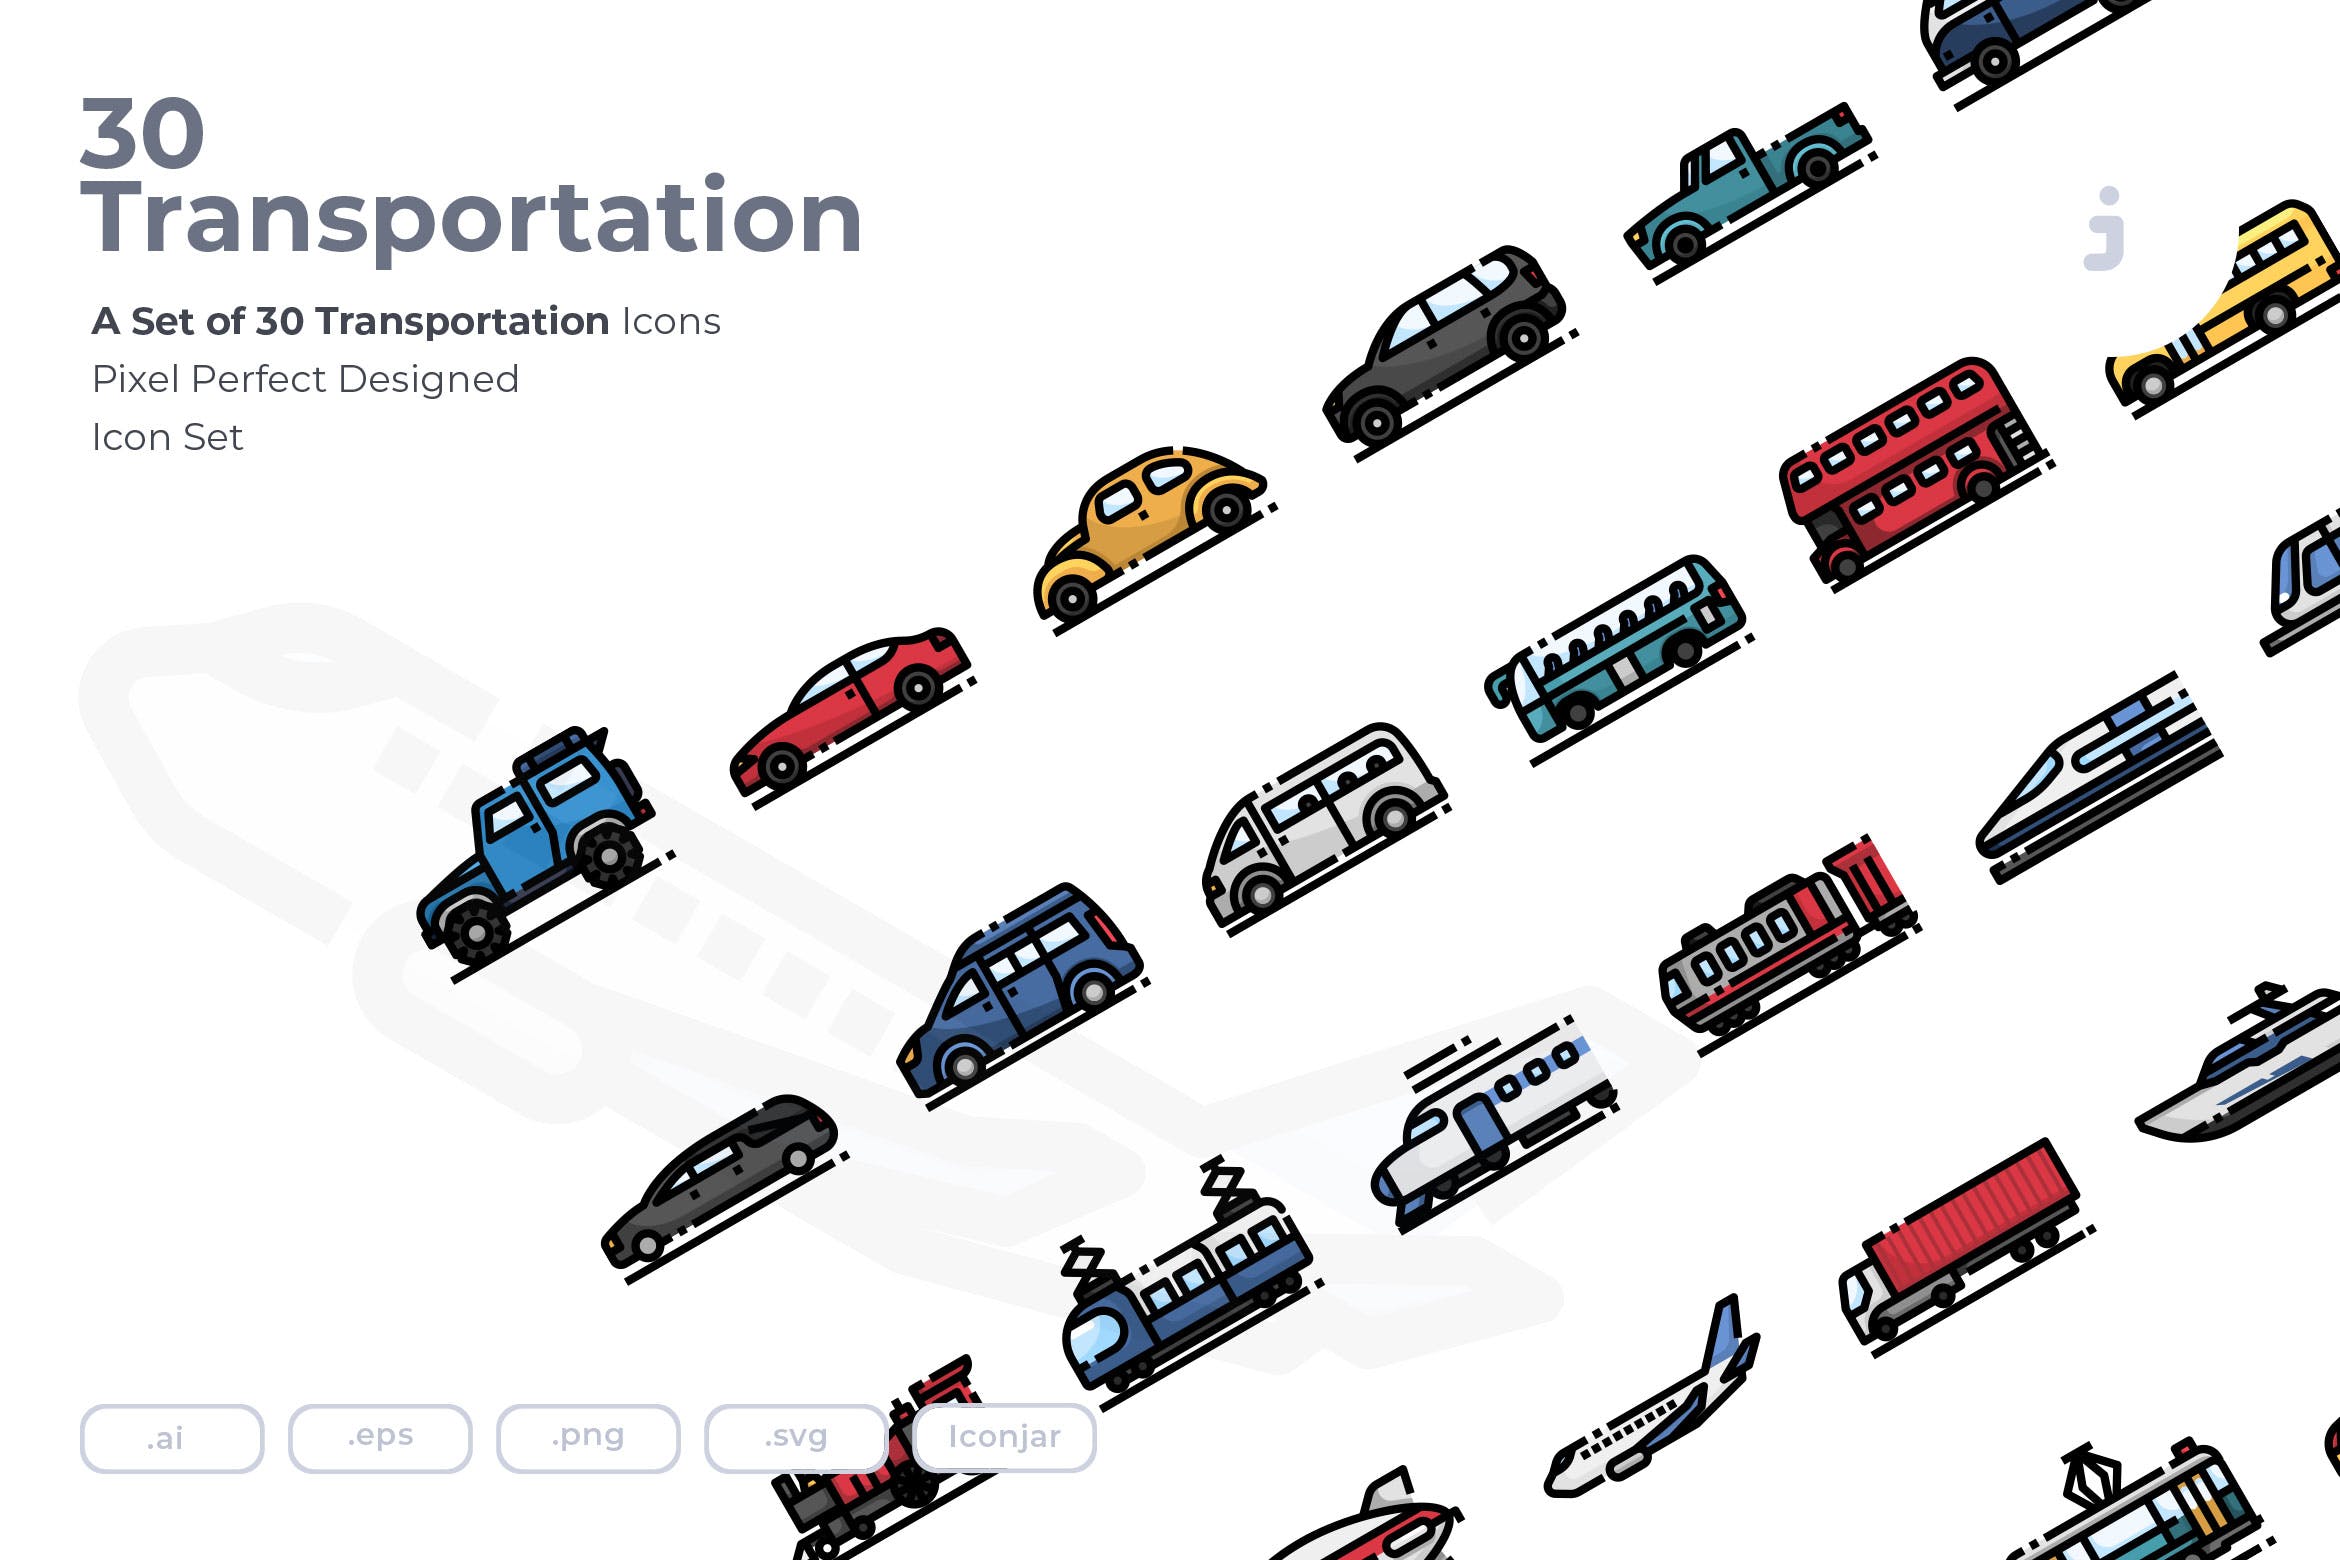 30枚现代交通工具矢量16设计素材网精选图标 30 Transportation Icons插图